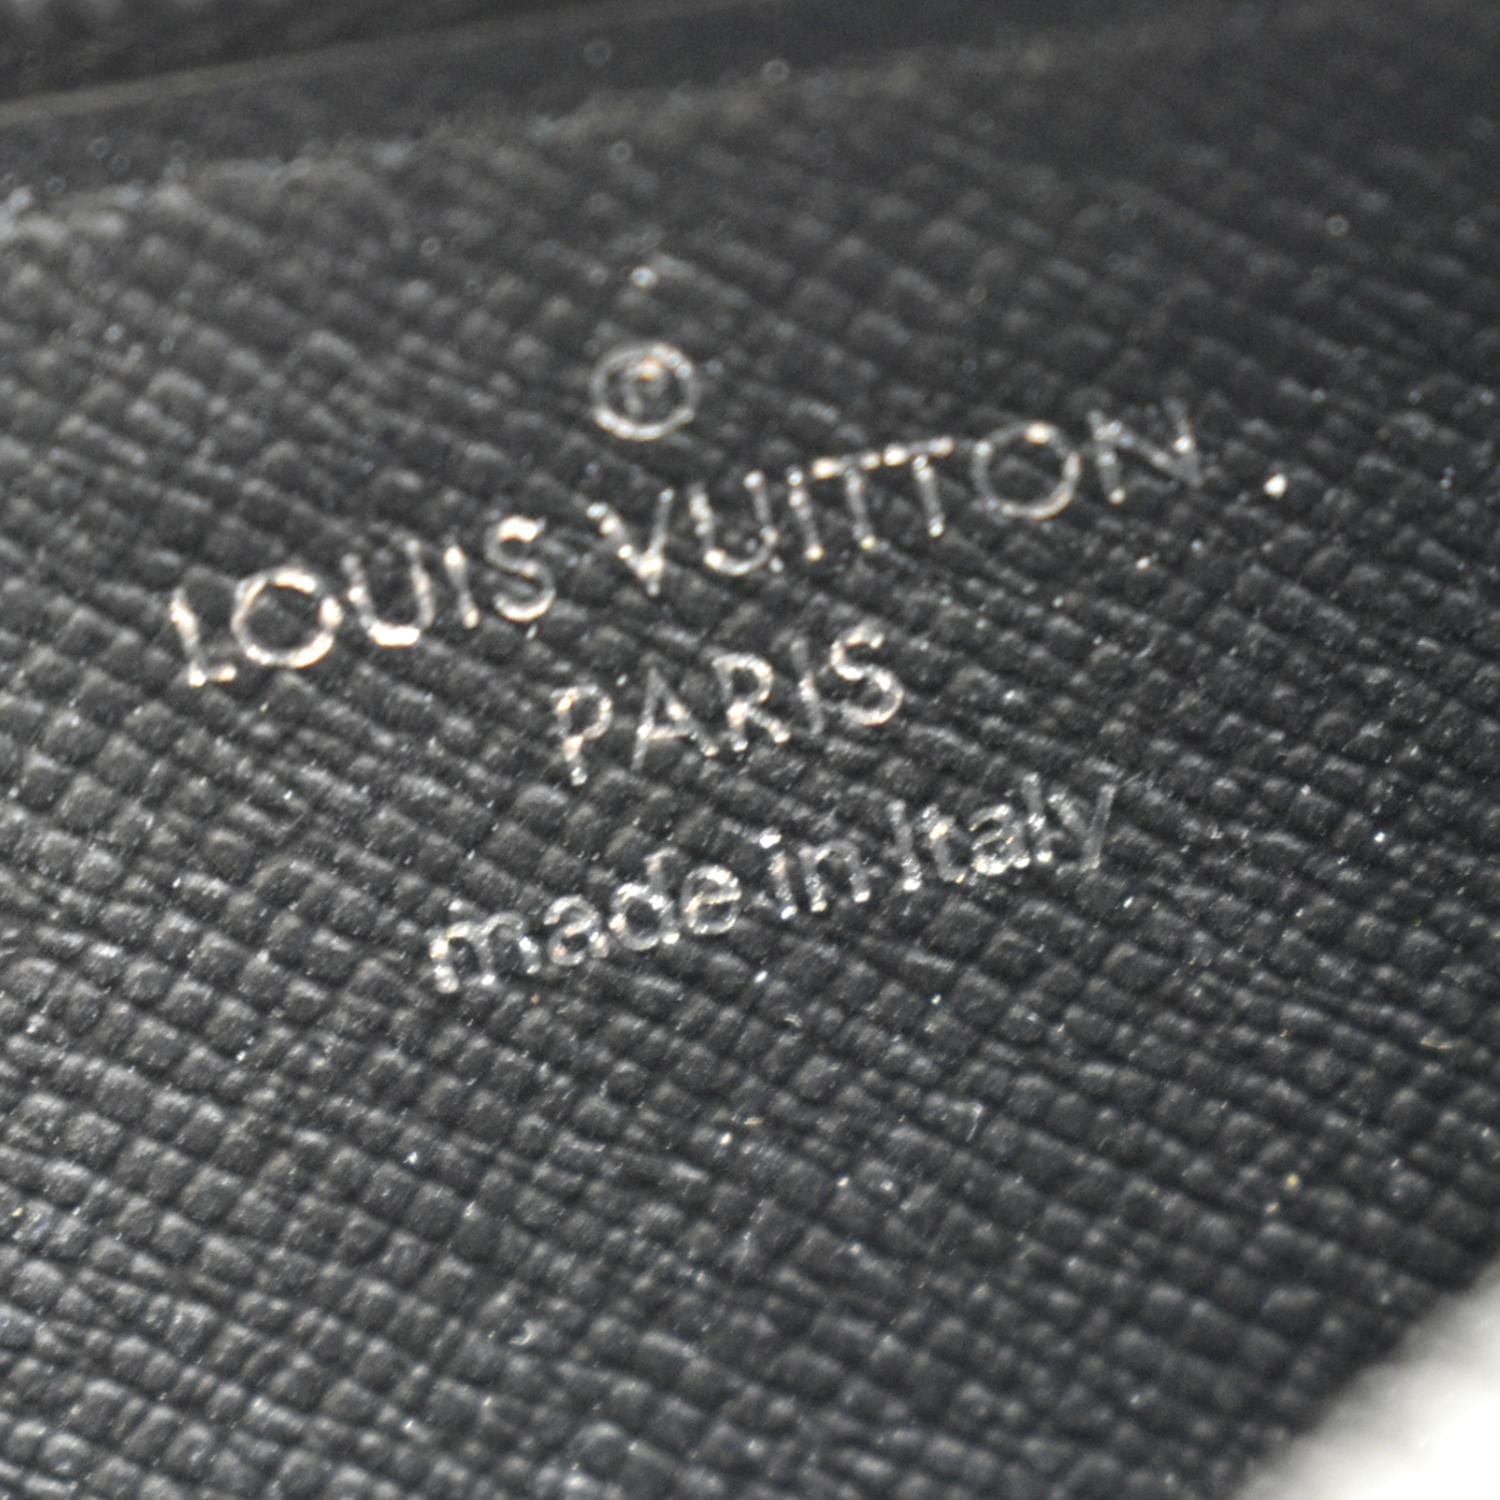 Louis Vuitton - Double Card Holder - Monogram Eclipse Canvas